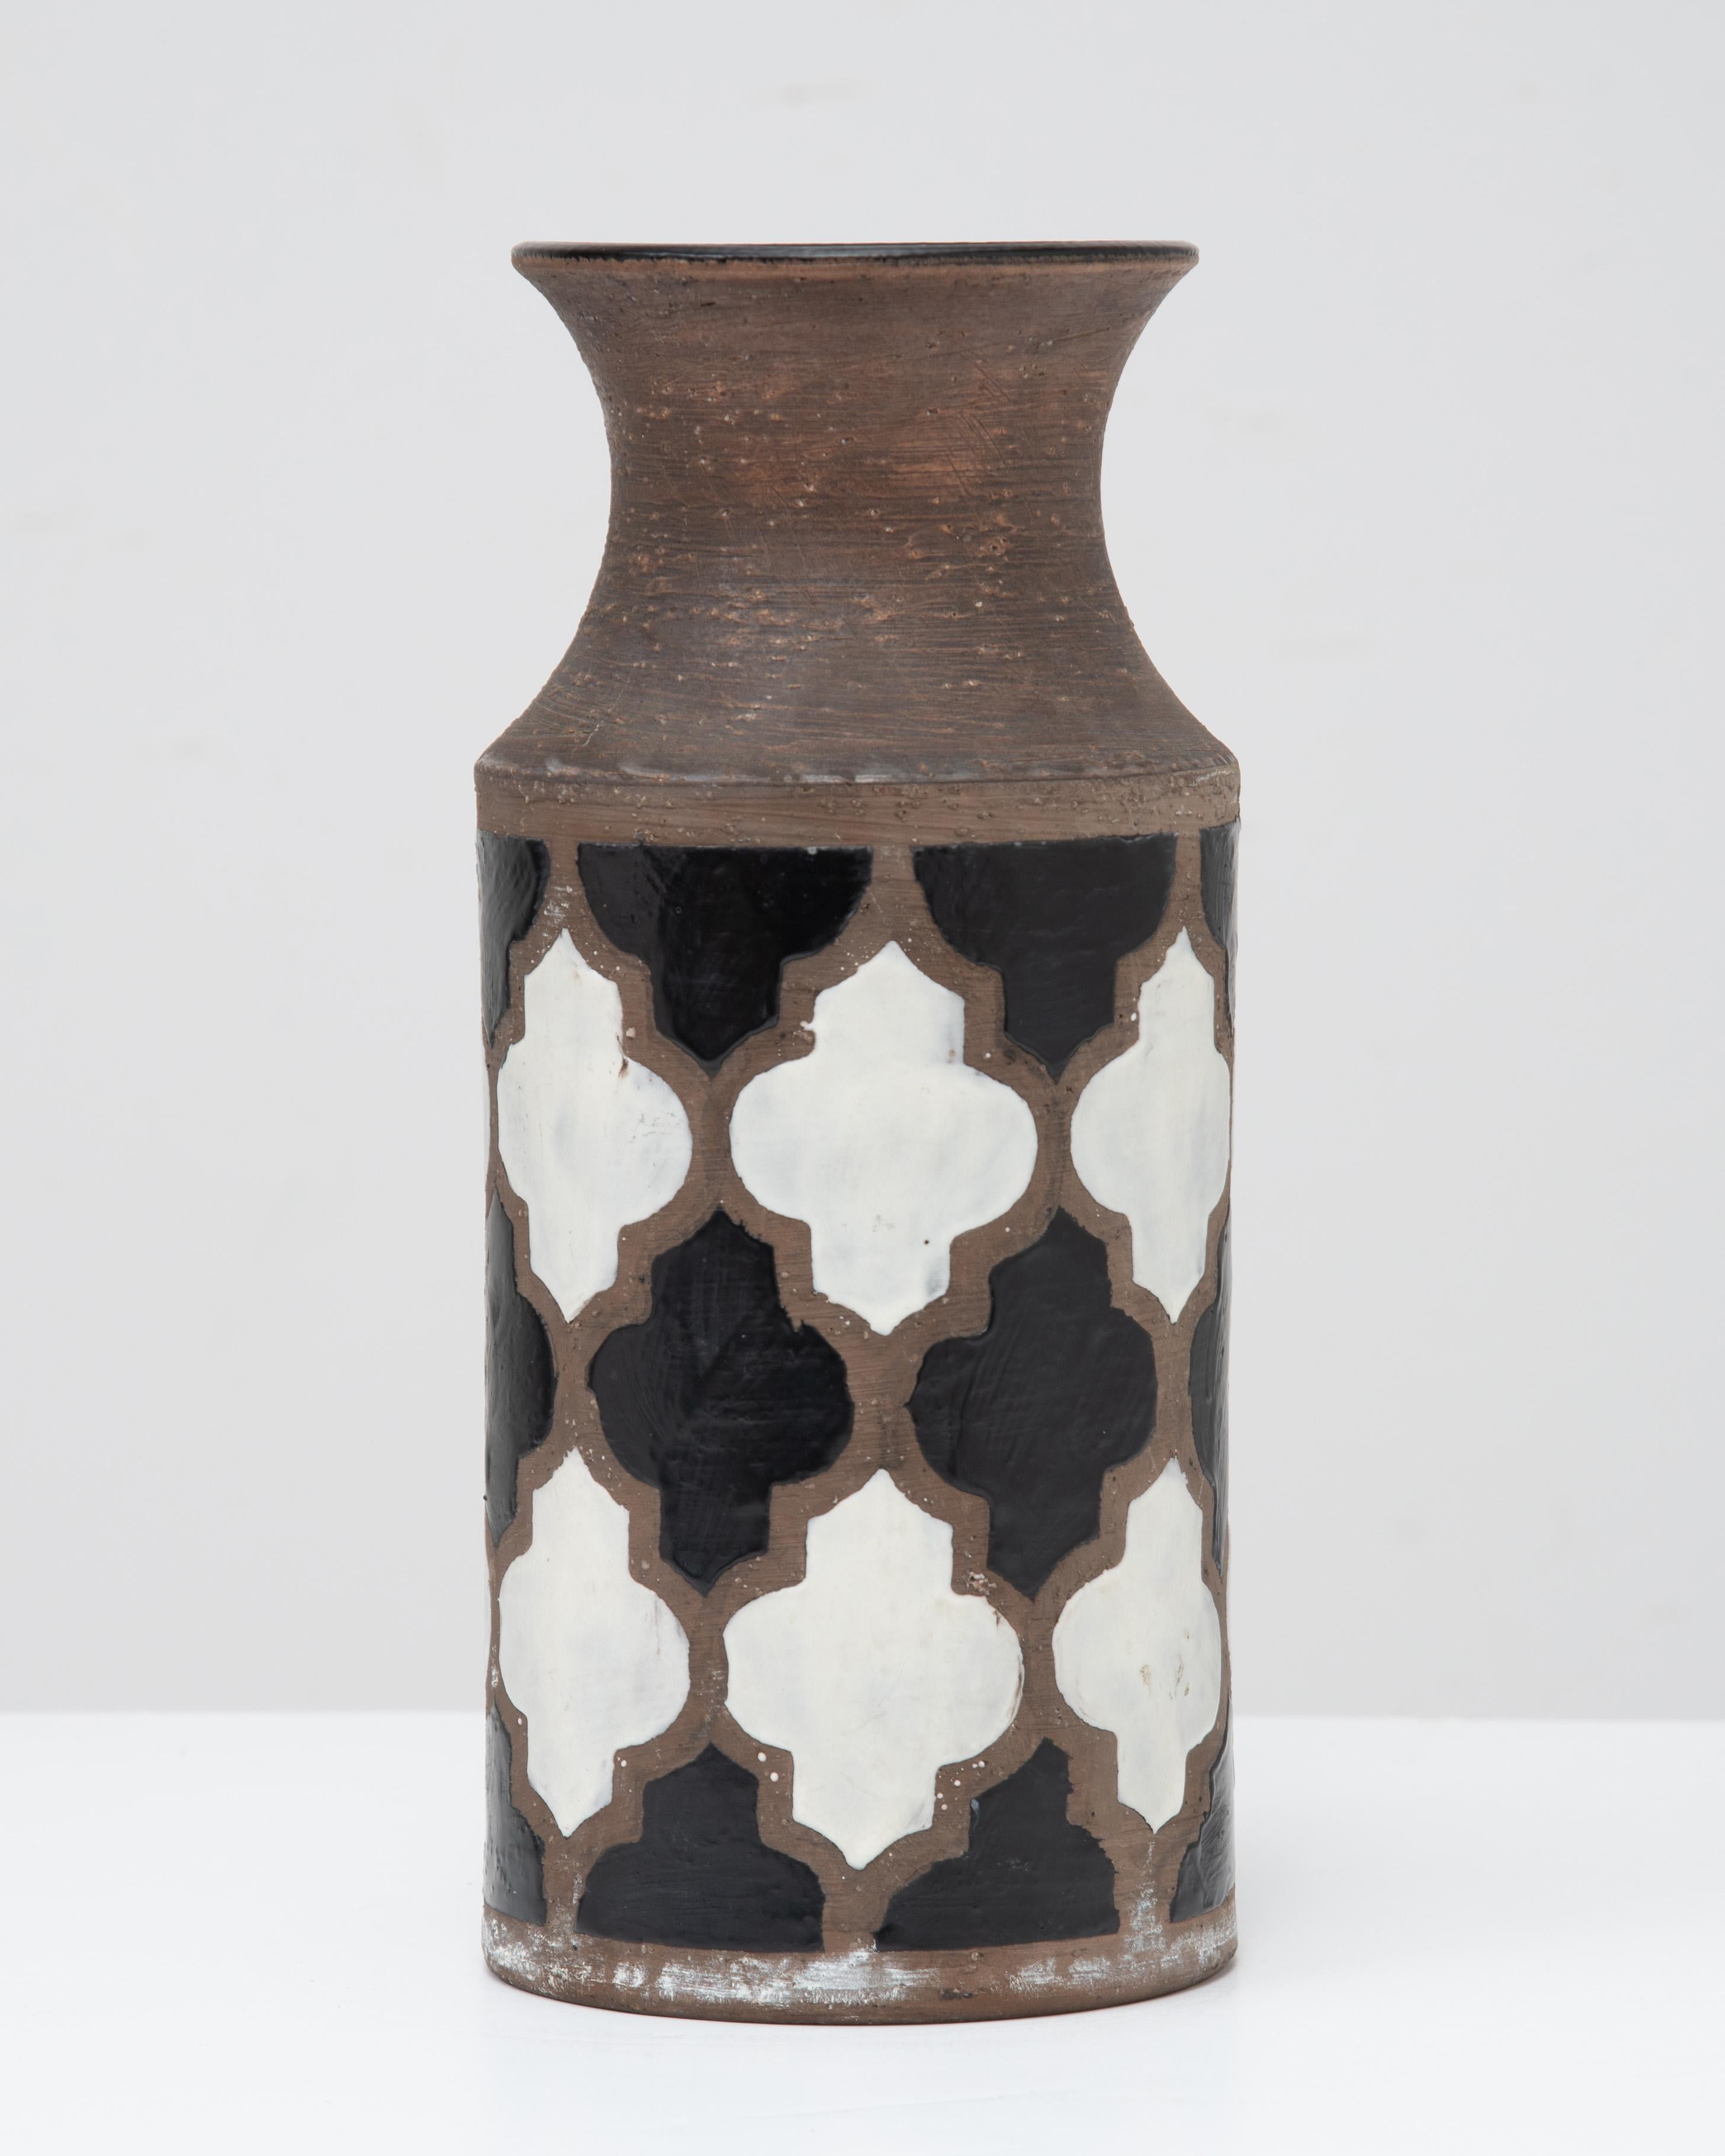 Eine wunderschöne Keramikvase der Serie Harlekin 8571B von Aldo Londi für Bitossi. Ein schwarzes und weißes Muster auf einem bernsteinfarbenen bis bernsteinfarbenen Biskuitkörper.